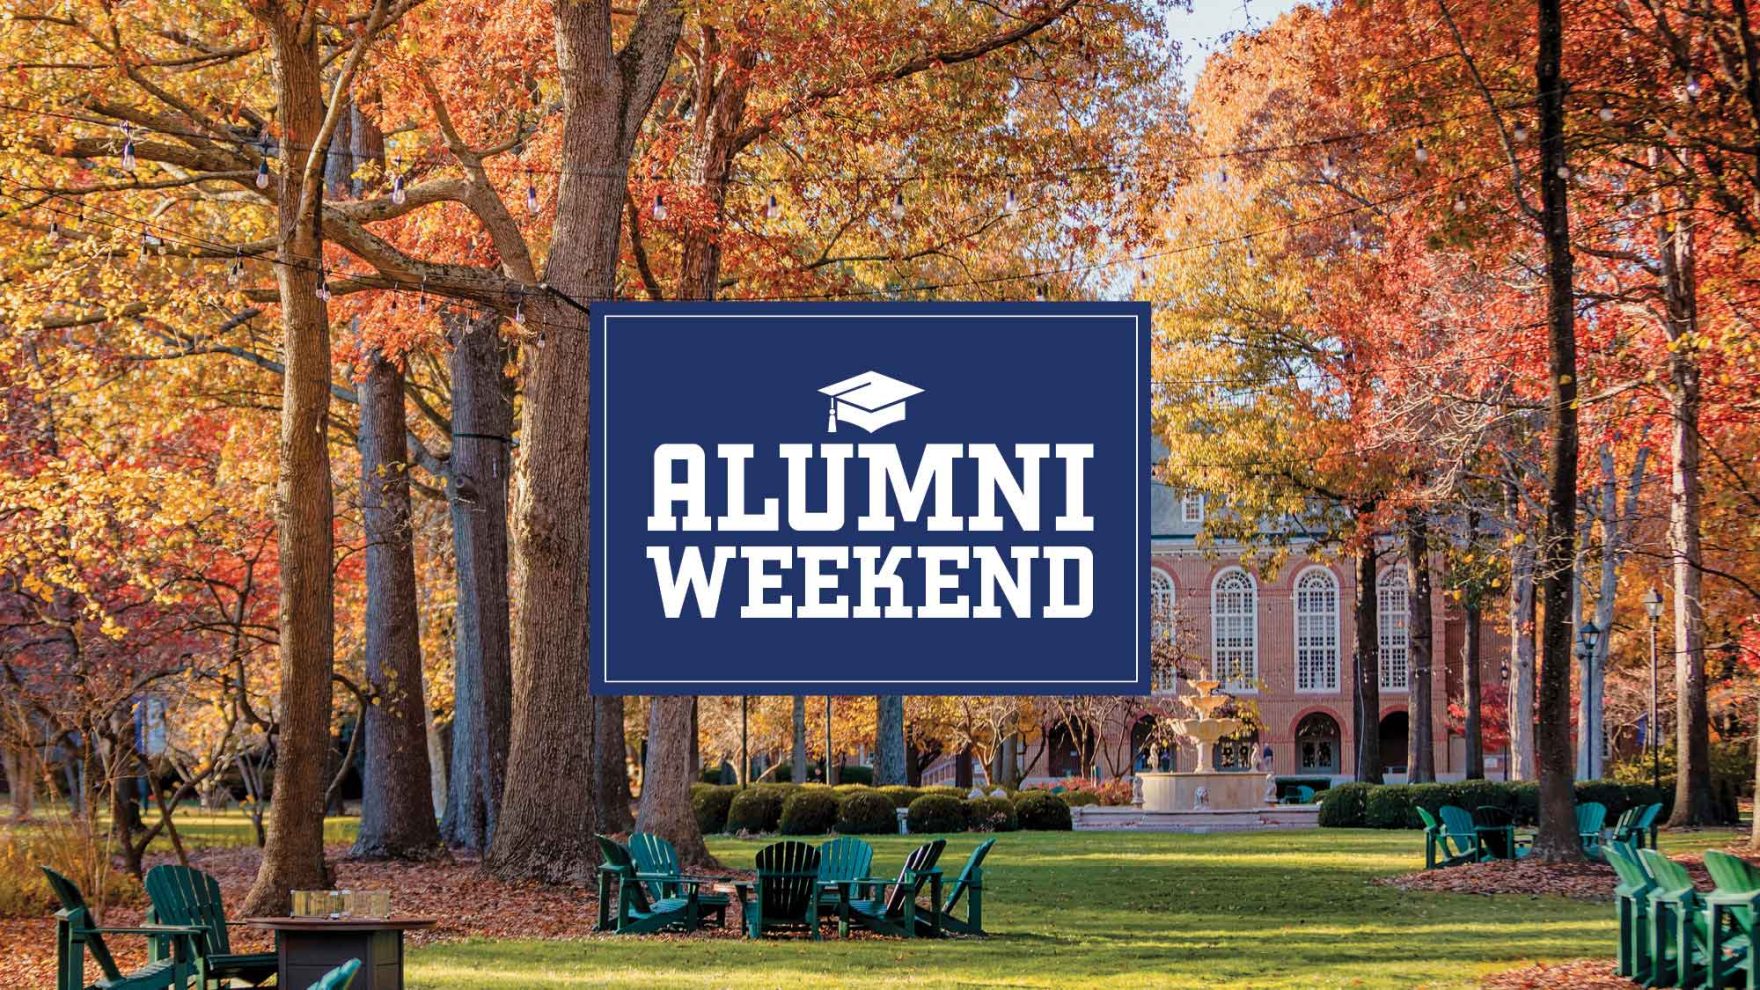 Regent University alumni weekend: Join the event in Virginia Beach, VA.